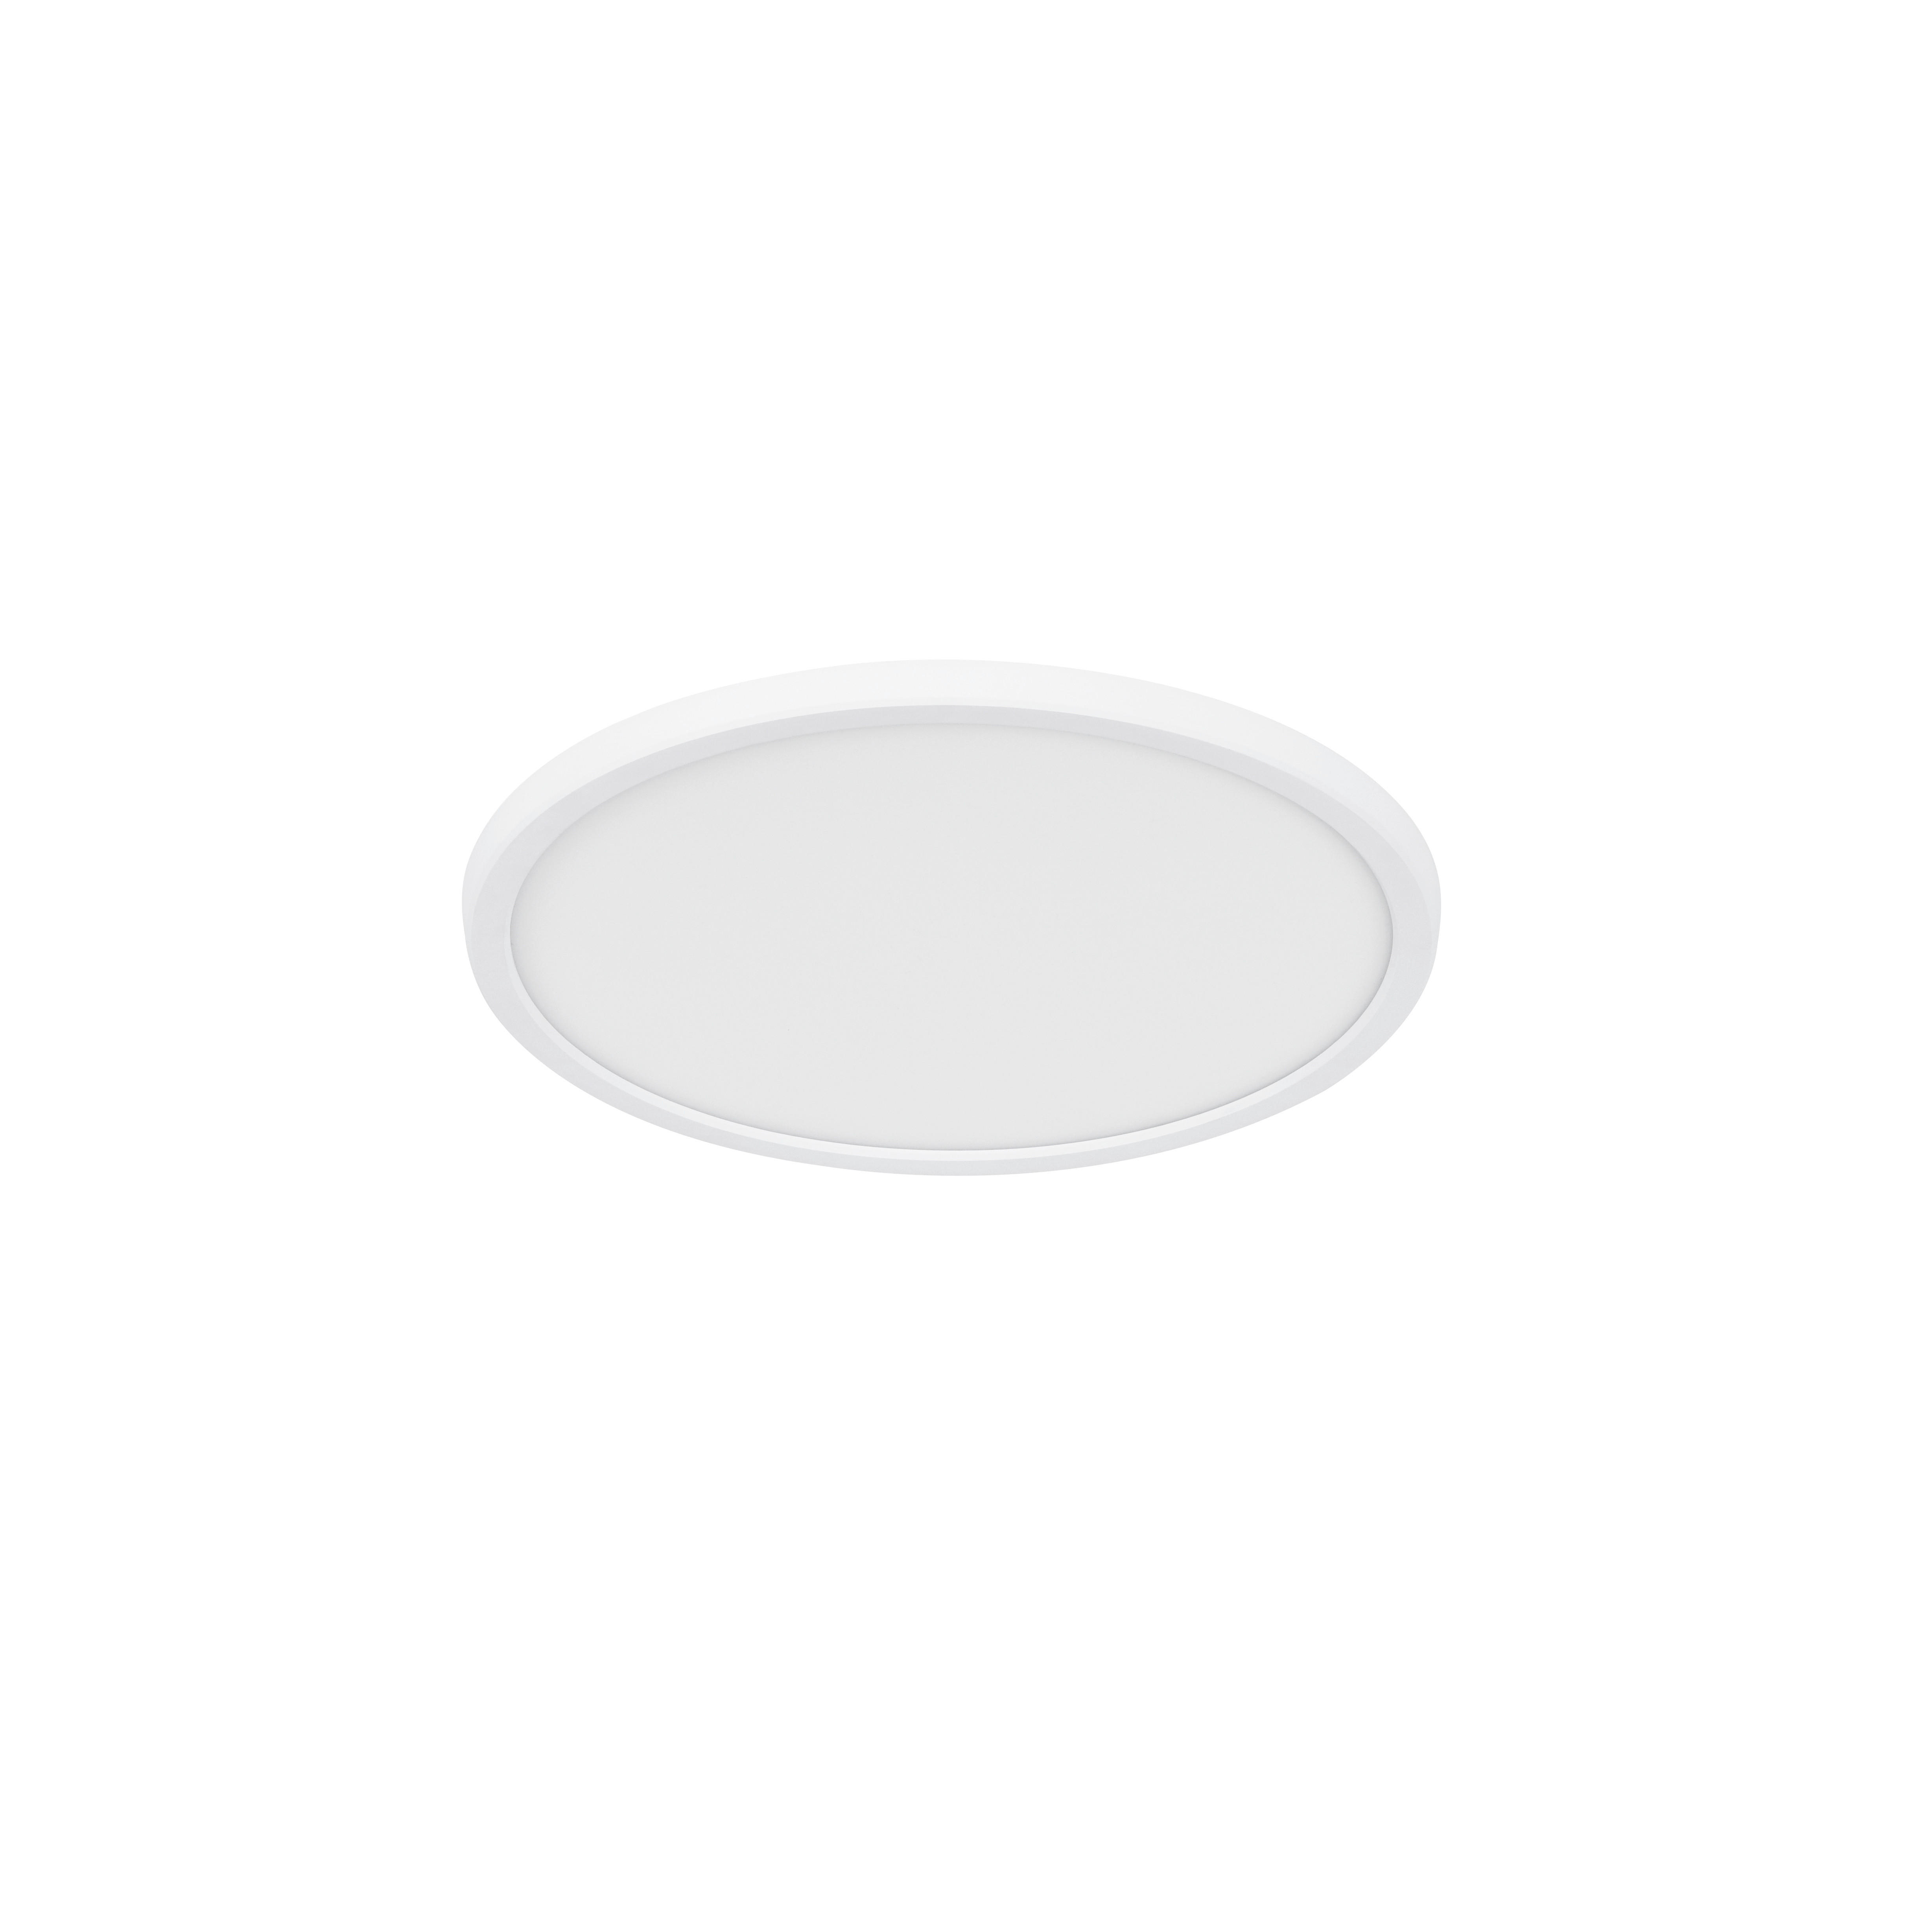 DECKENLEUCHTE  29,4/3,8 cm    - Weiß, Basics, Kunststoff (29,4/3,8cm) - Nordlux